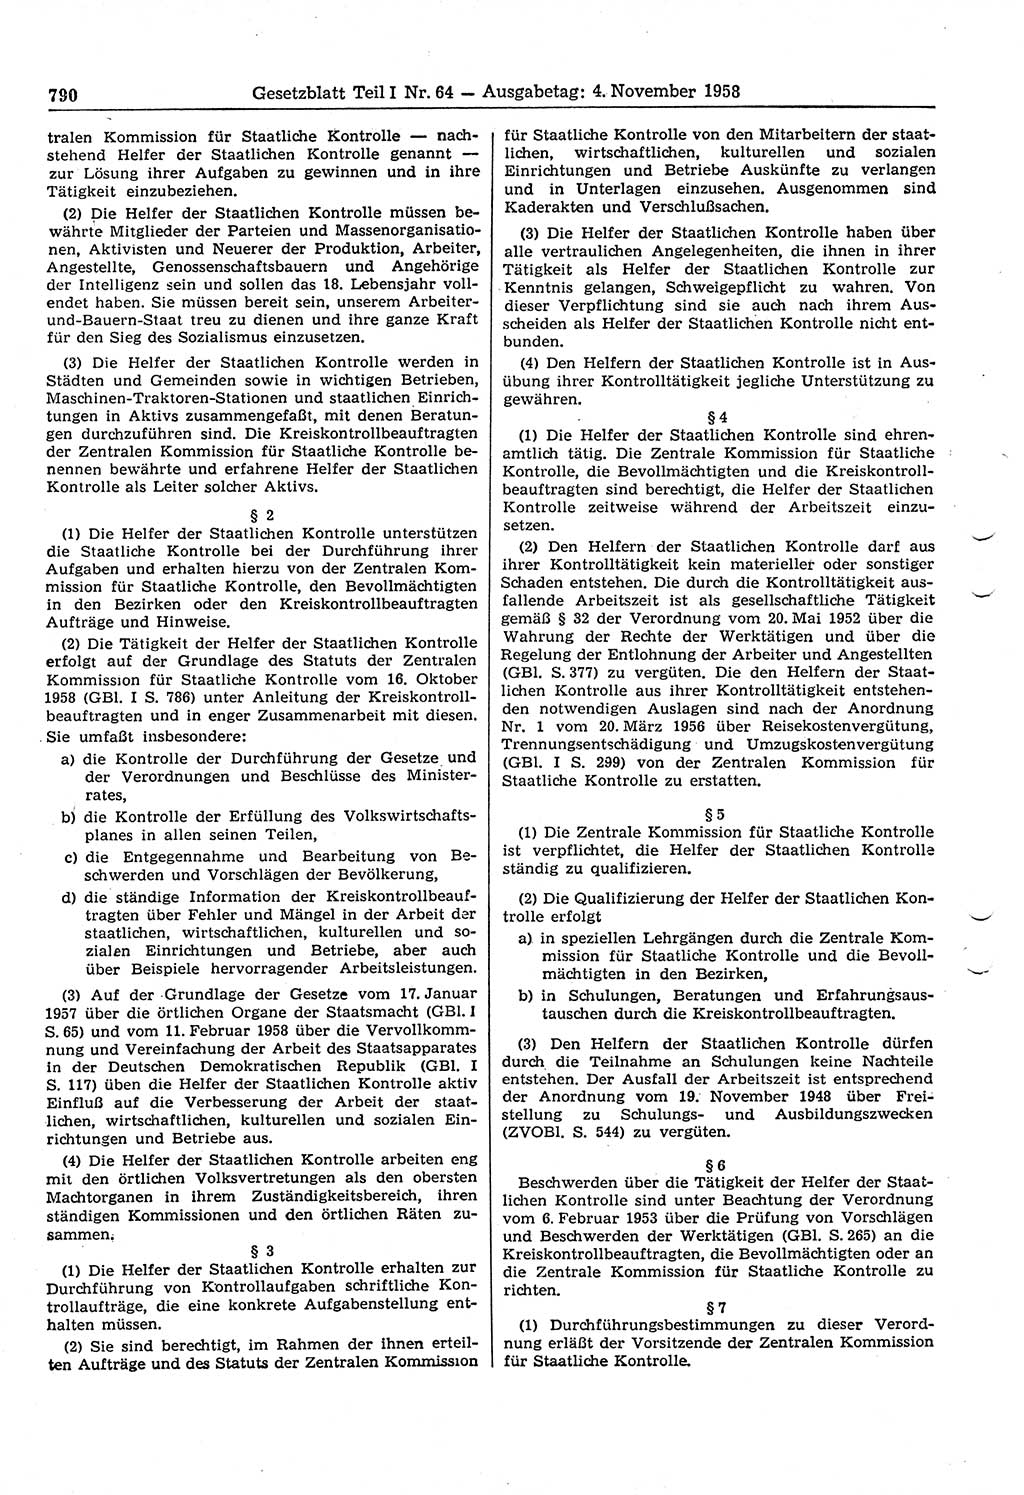 Gesetzblatt (GBl.) der Deutschen Demokratischen Republik (DDR) Teil Ⅰ 1958, Seite 790 (GBl. DDR Ⅰ 1958, S. 790)